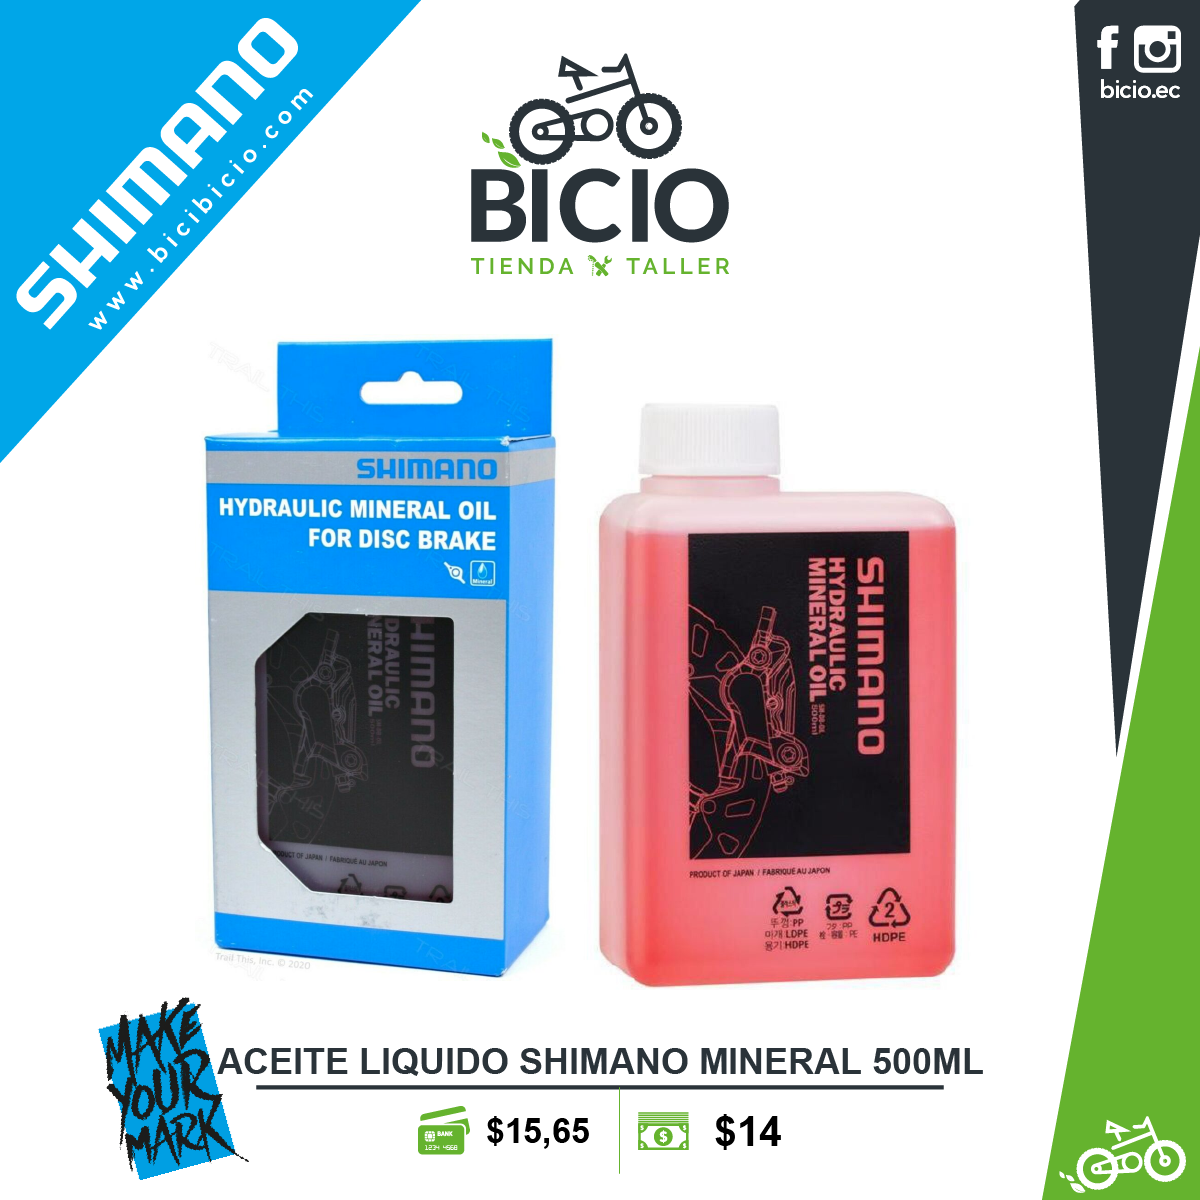 Aceite de freno de bicicleta Aceite mineral para sistema de frenos Sh-imano  Aceites hidráulicos, aceite mineral de alto rendimiento, líquido de frenos